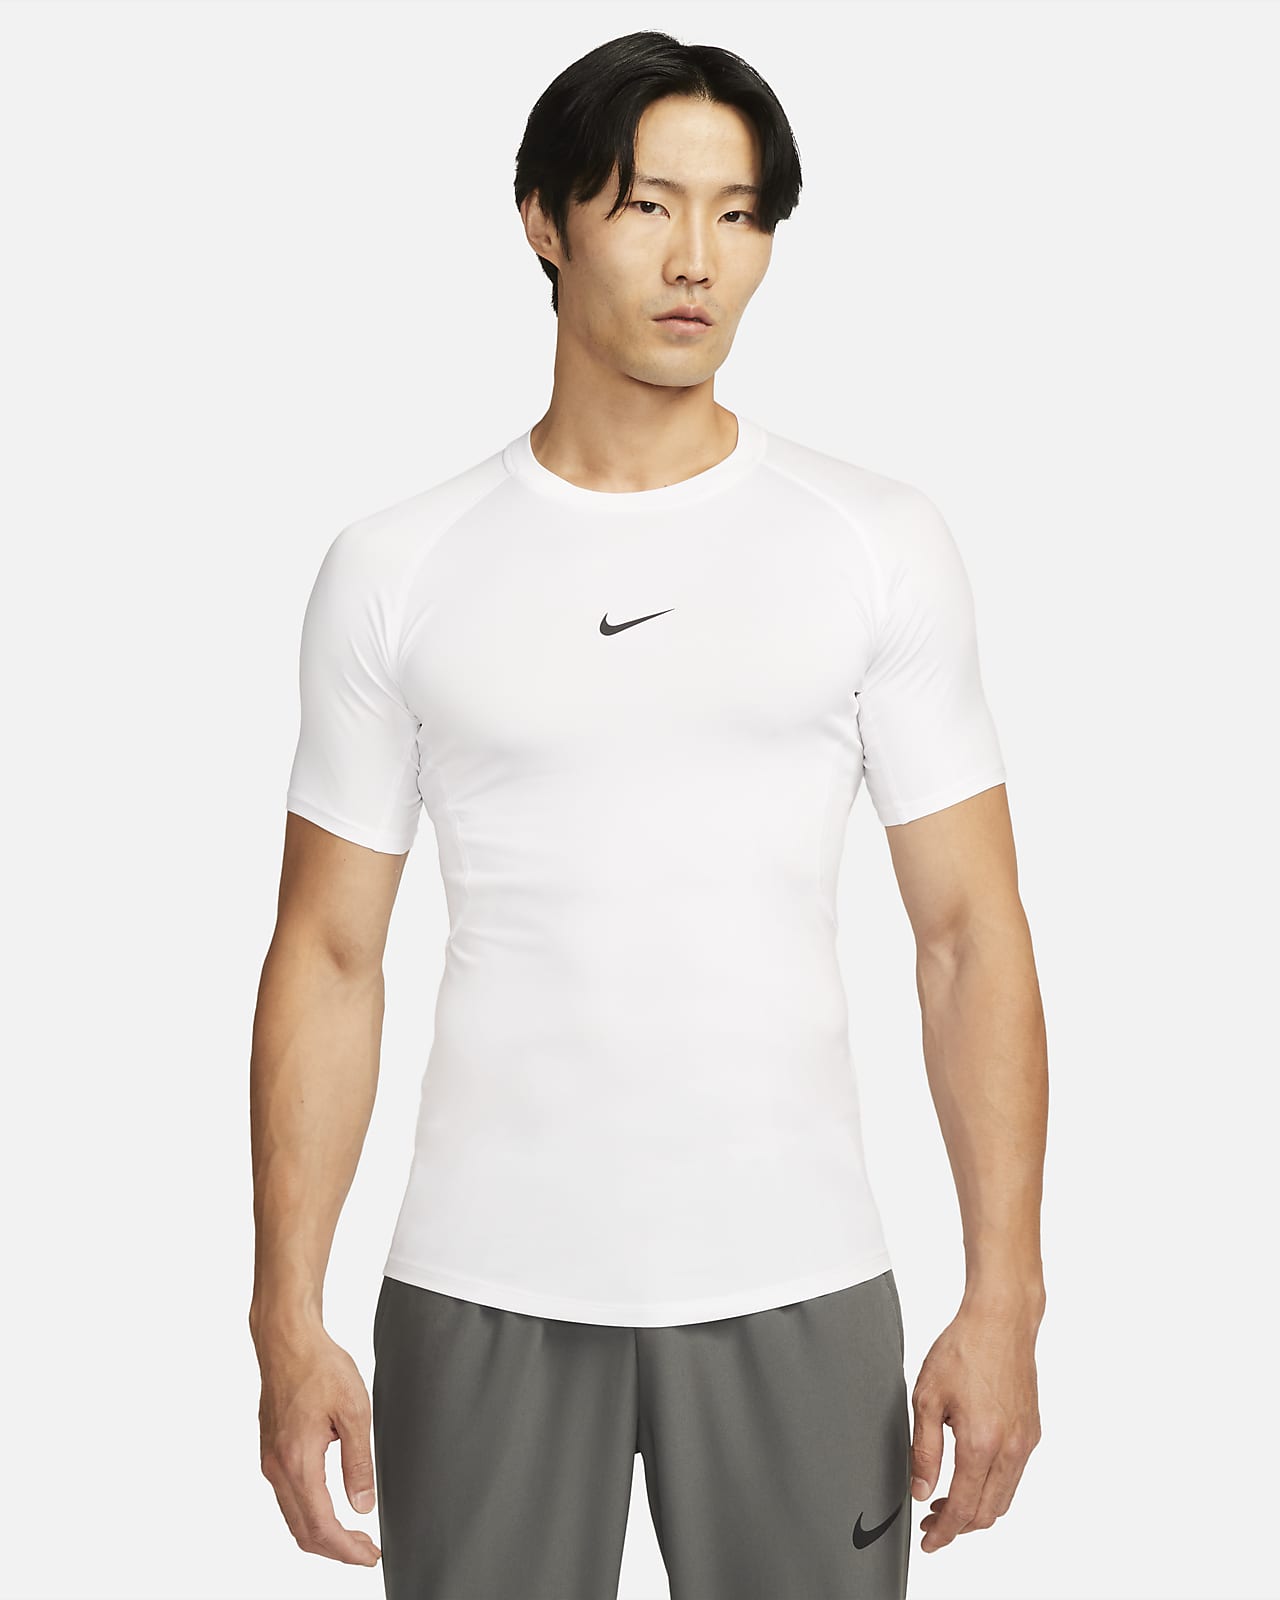 Tætsiddende Nike Pro Dri-FIT-fitnessoverdel med korte ærmer til mænd